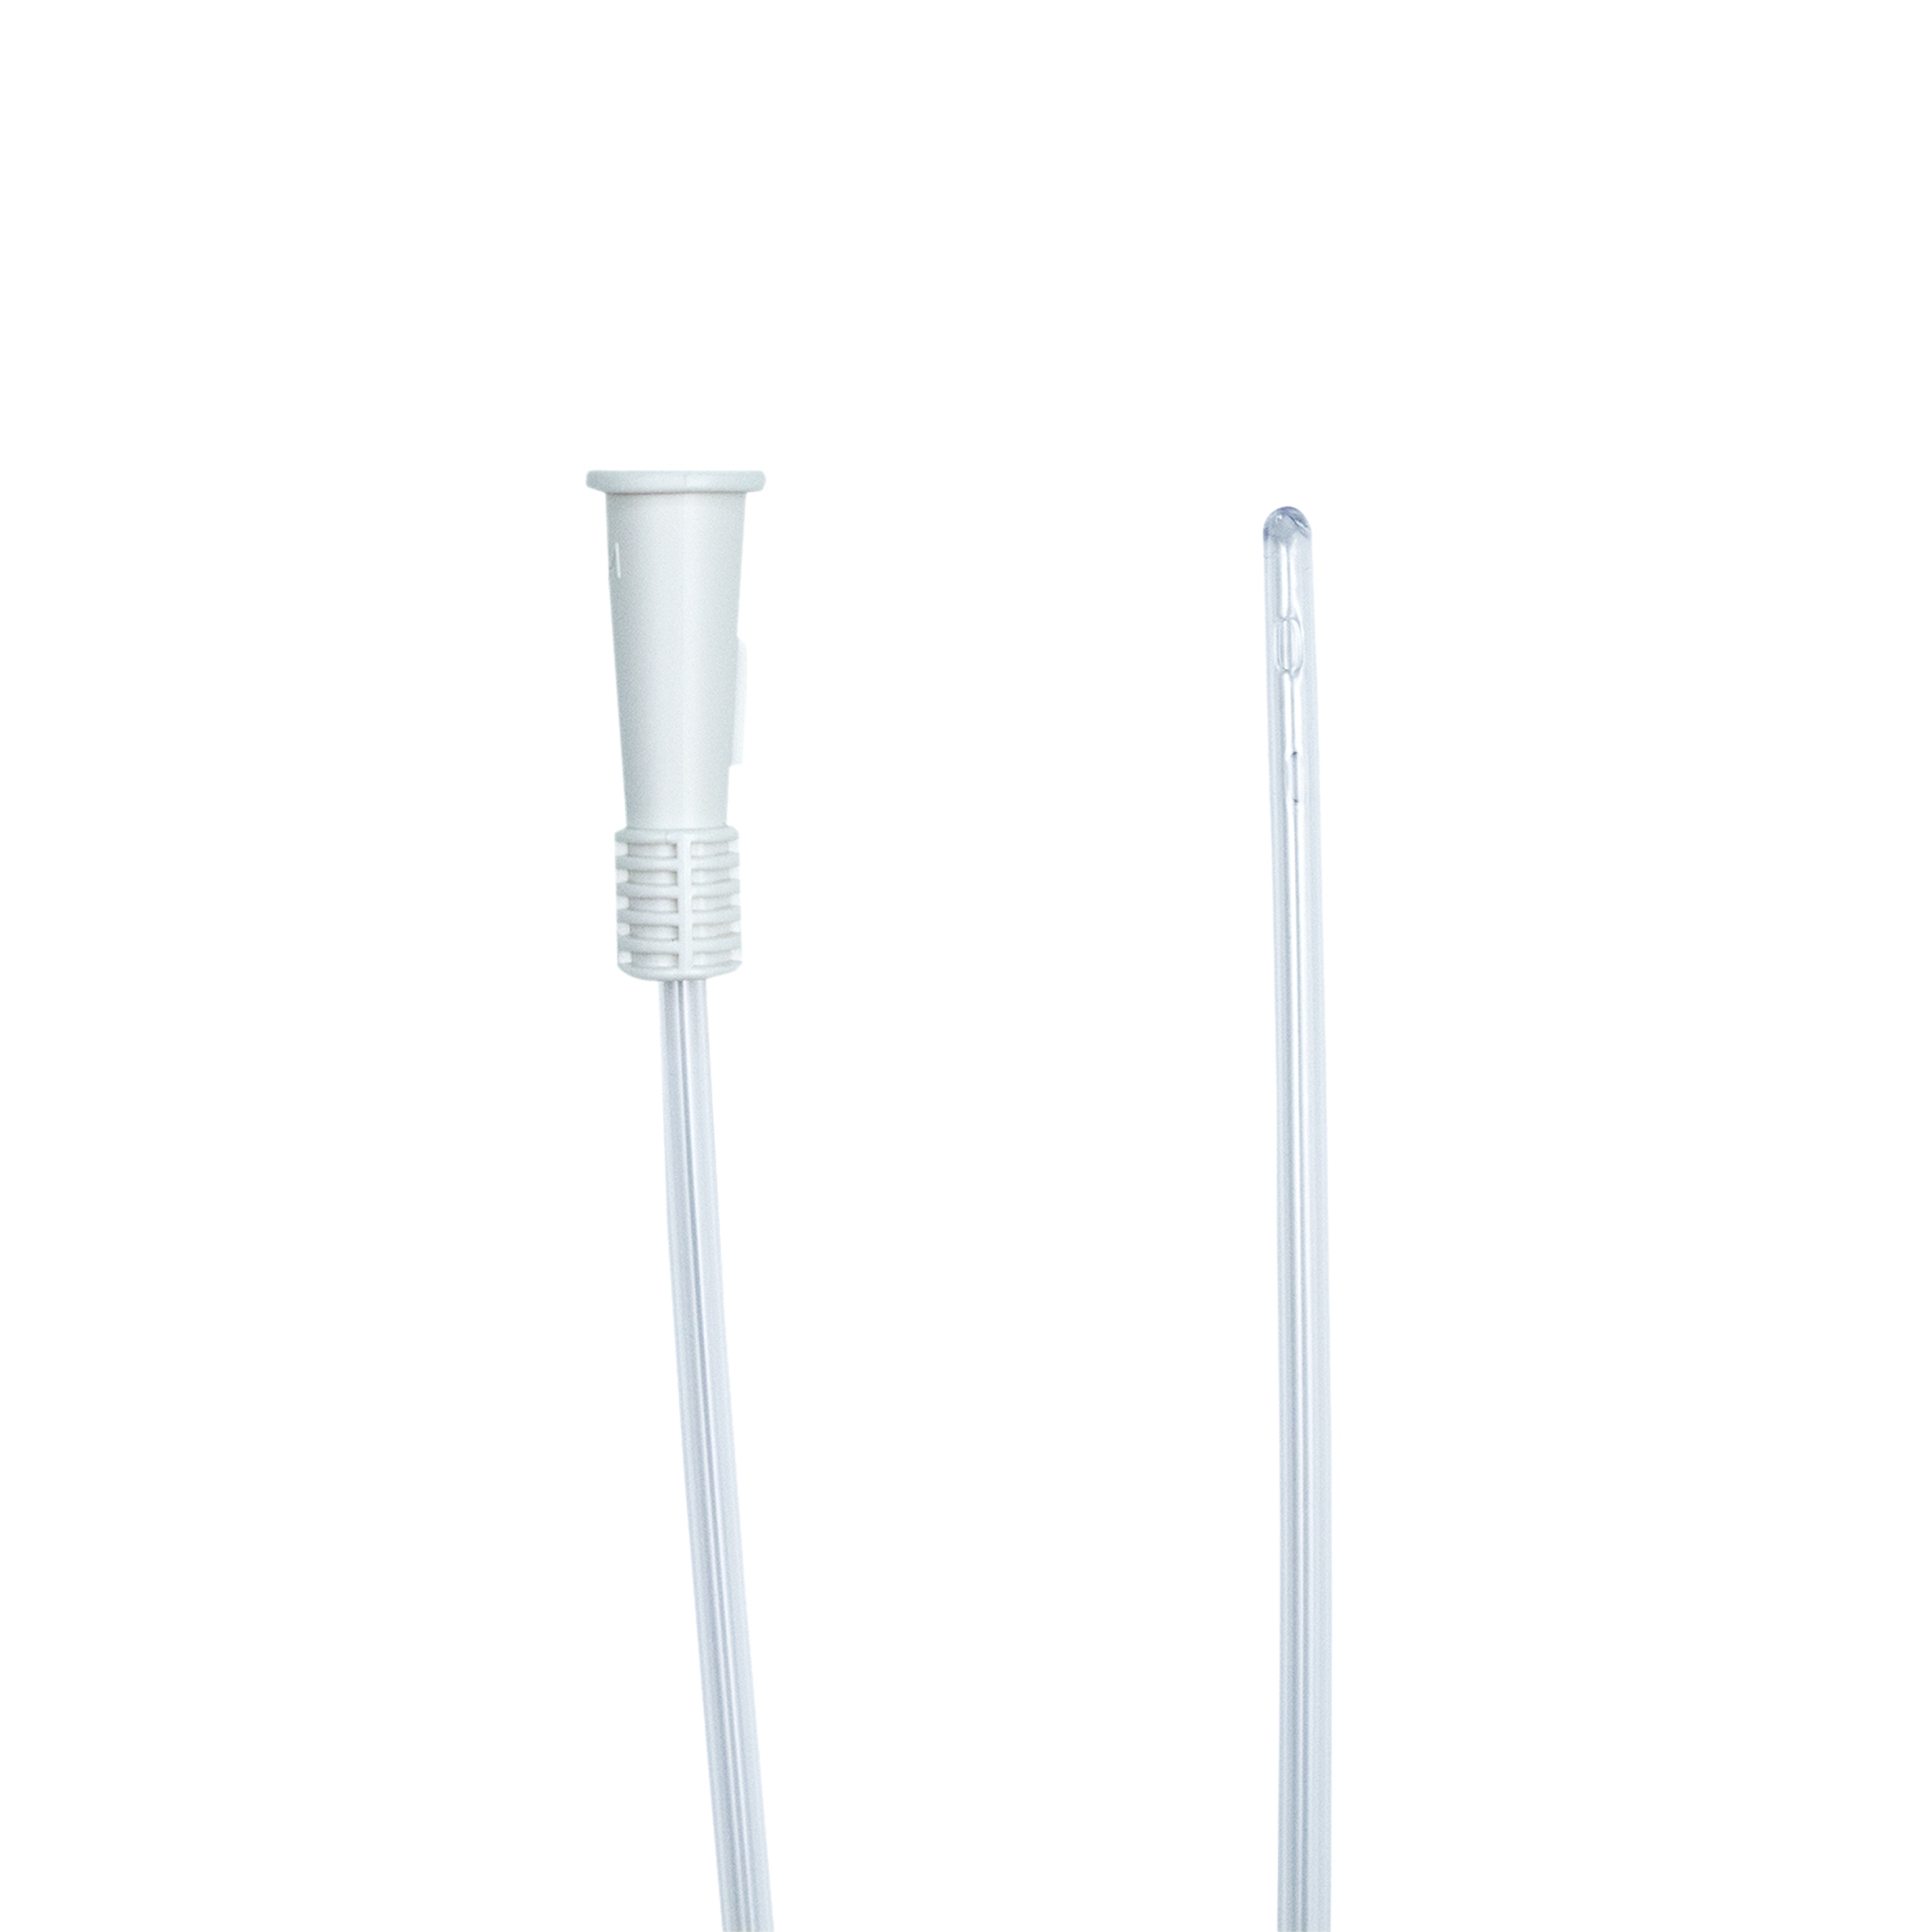 Intermittent Catheter (Female) 12Fr, Sterile White